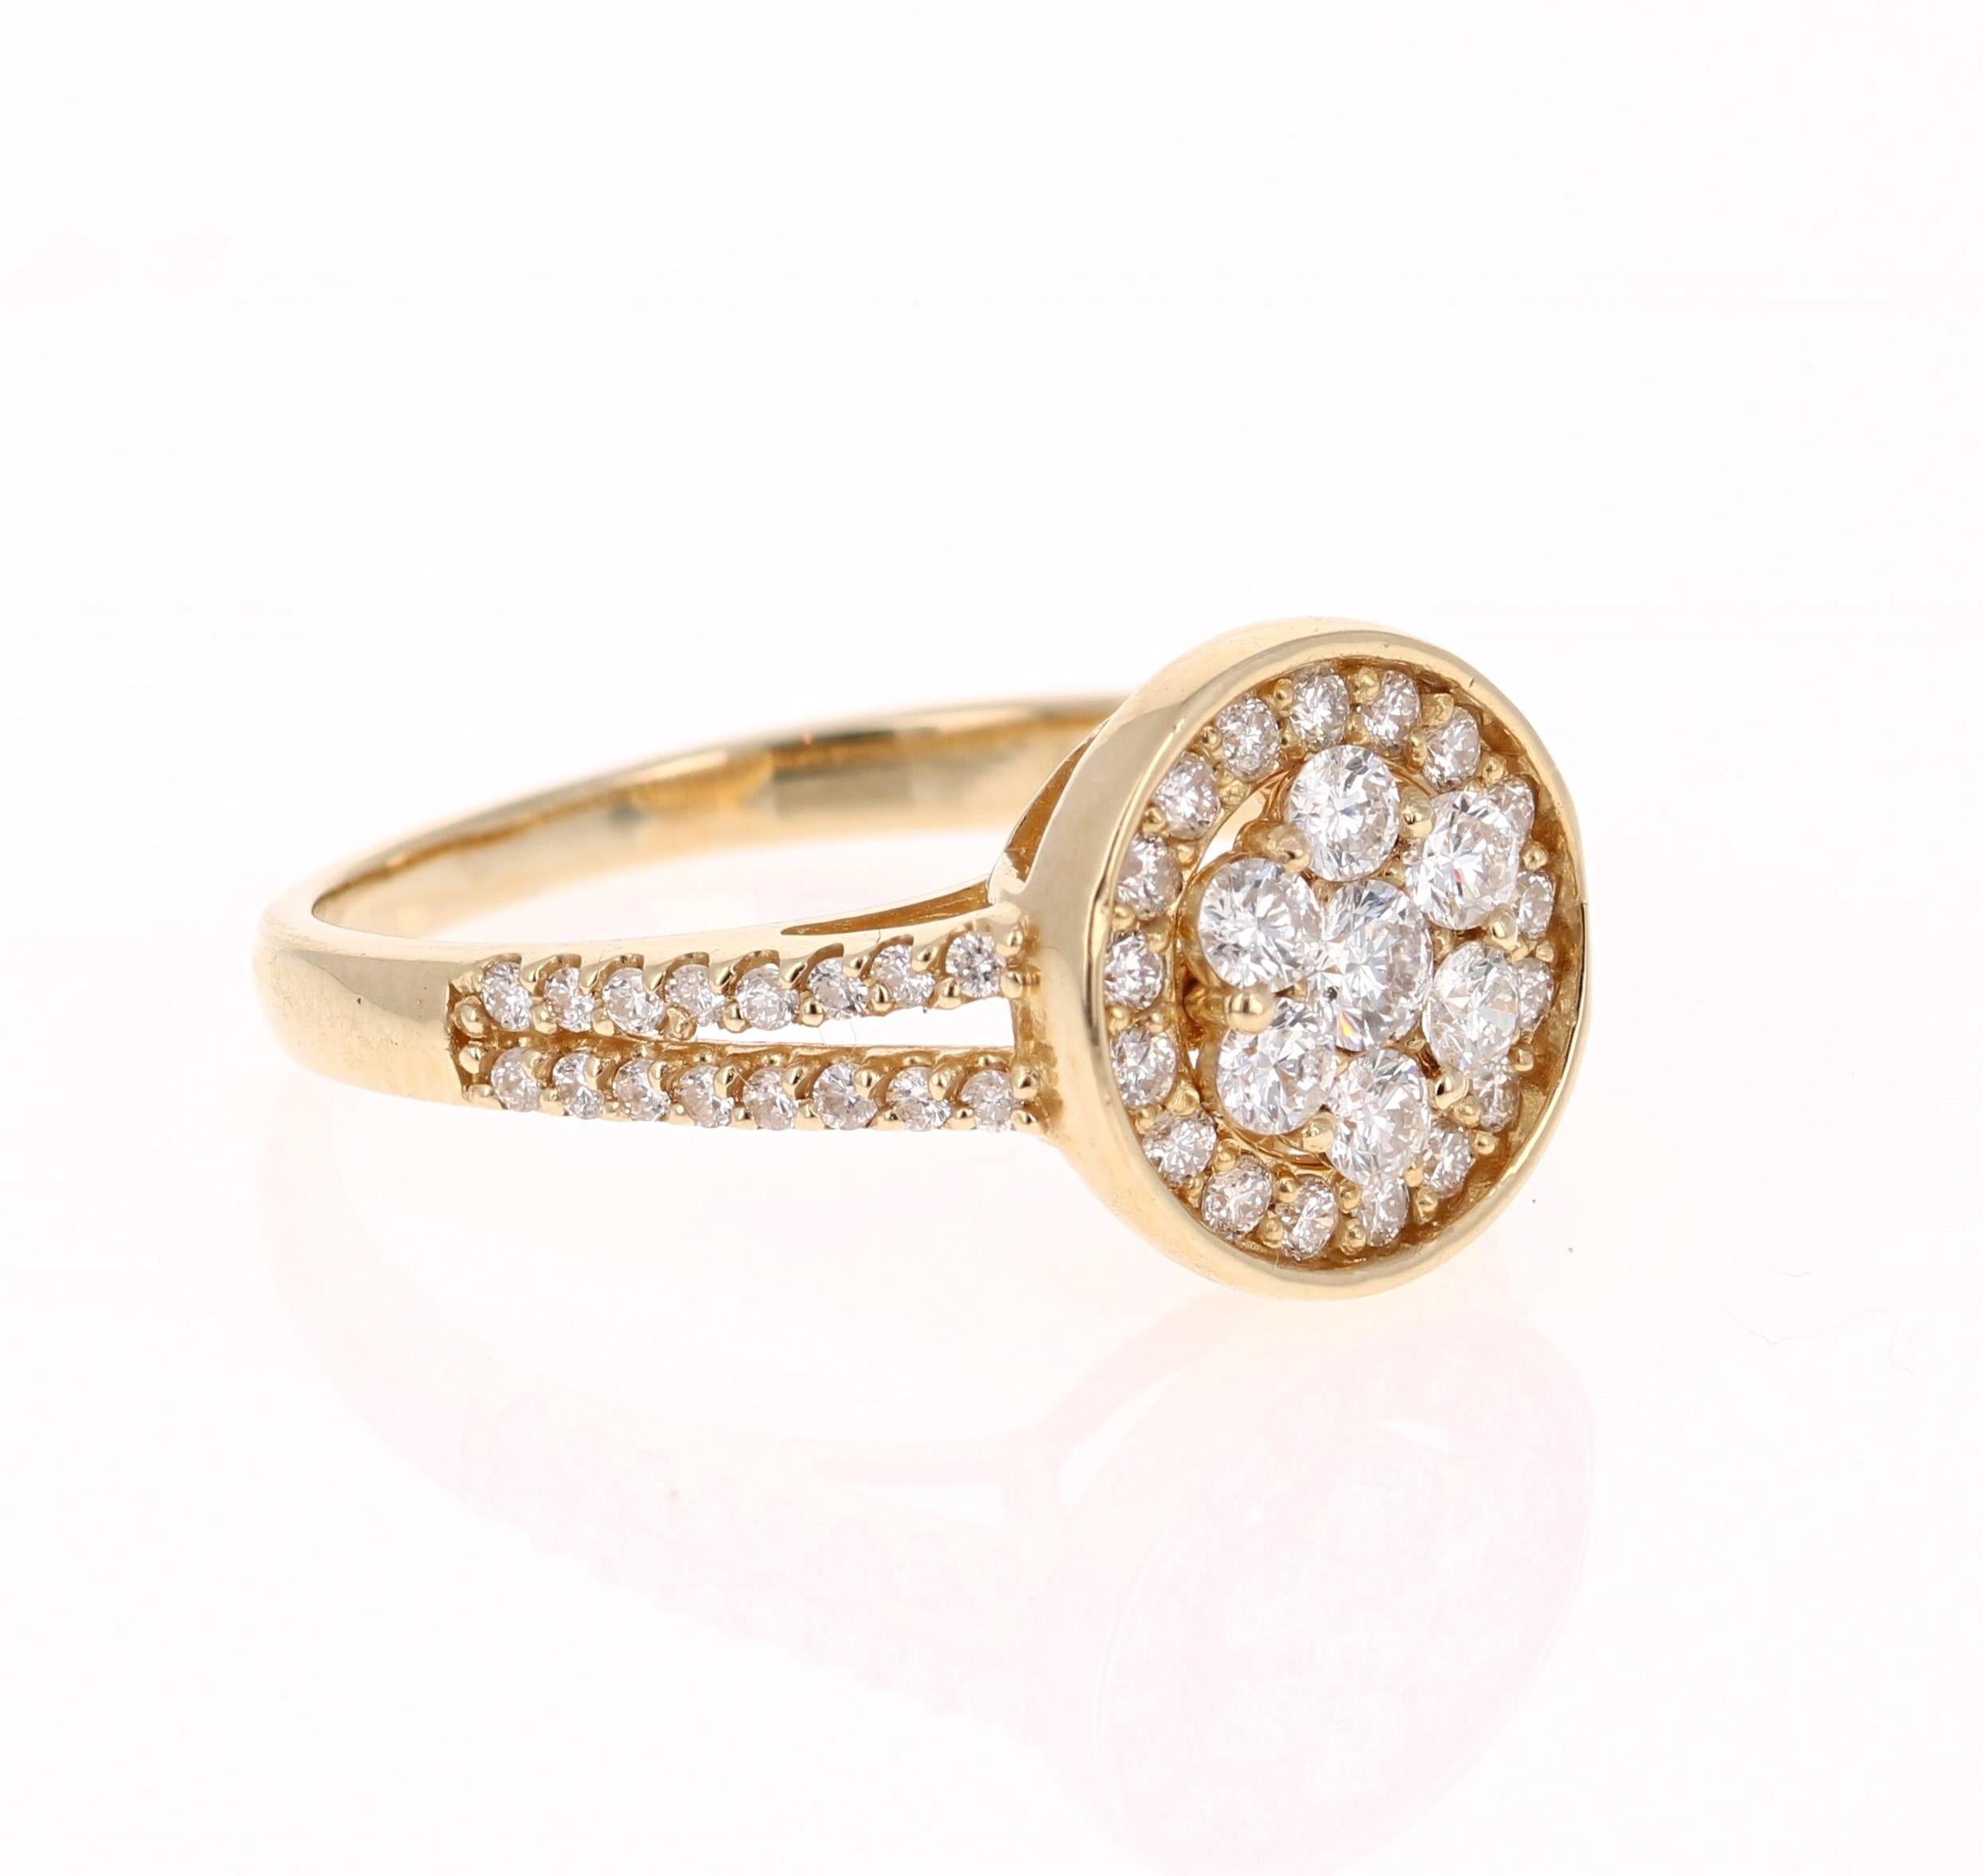 Dieser Ring hat 56 Diamanten im Rundschliff mit einem Gewicht von 0,68 Karat. 

Er ist wunderschön in 14 Karat Gelbgold gefasst und wiegt etwa 3,0 Gramm

Der Ring hat die Größe 6 1/2 und kann kostenlos umbestellt werden. 
